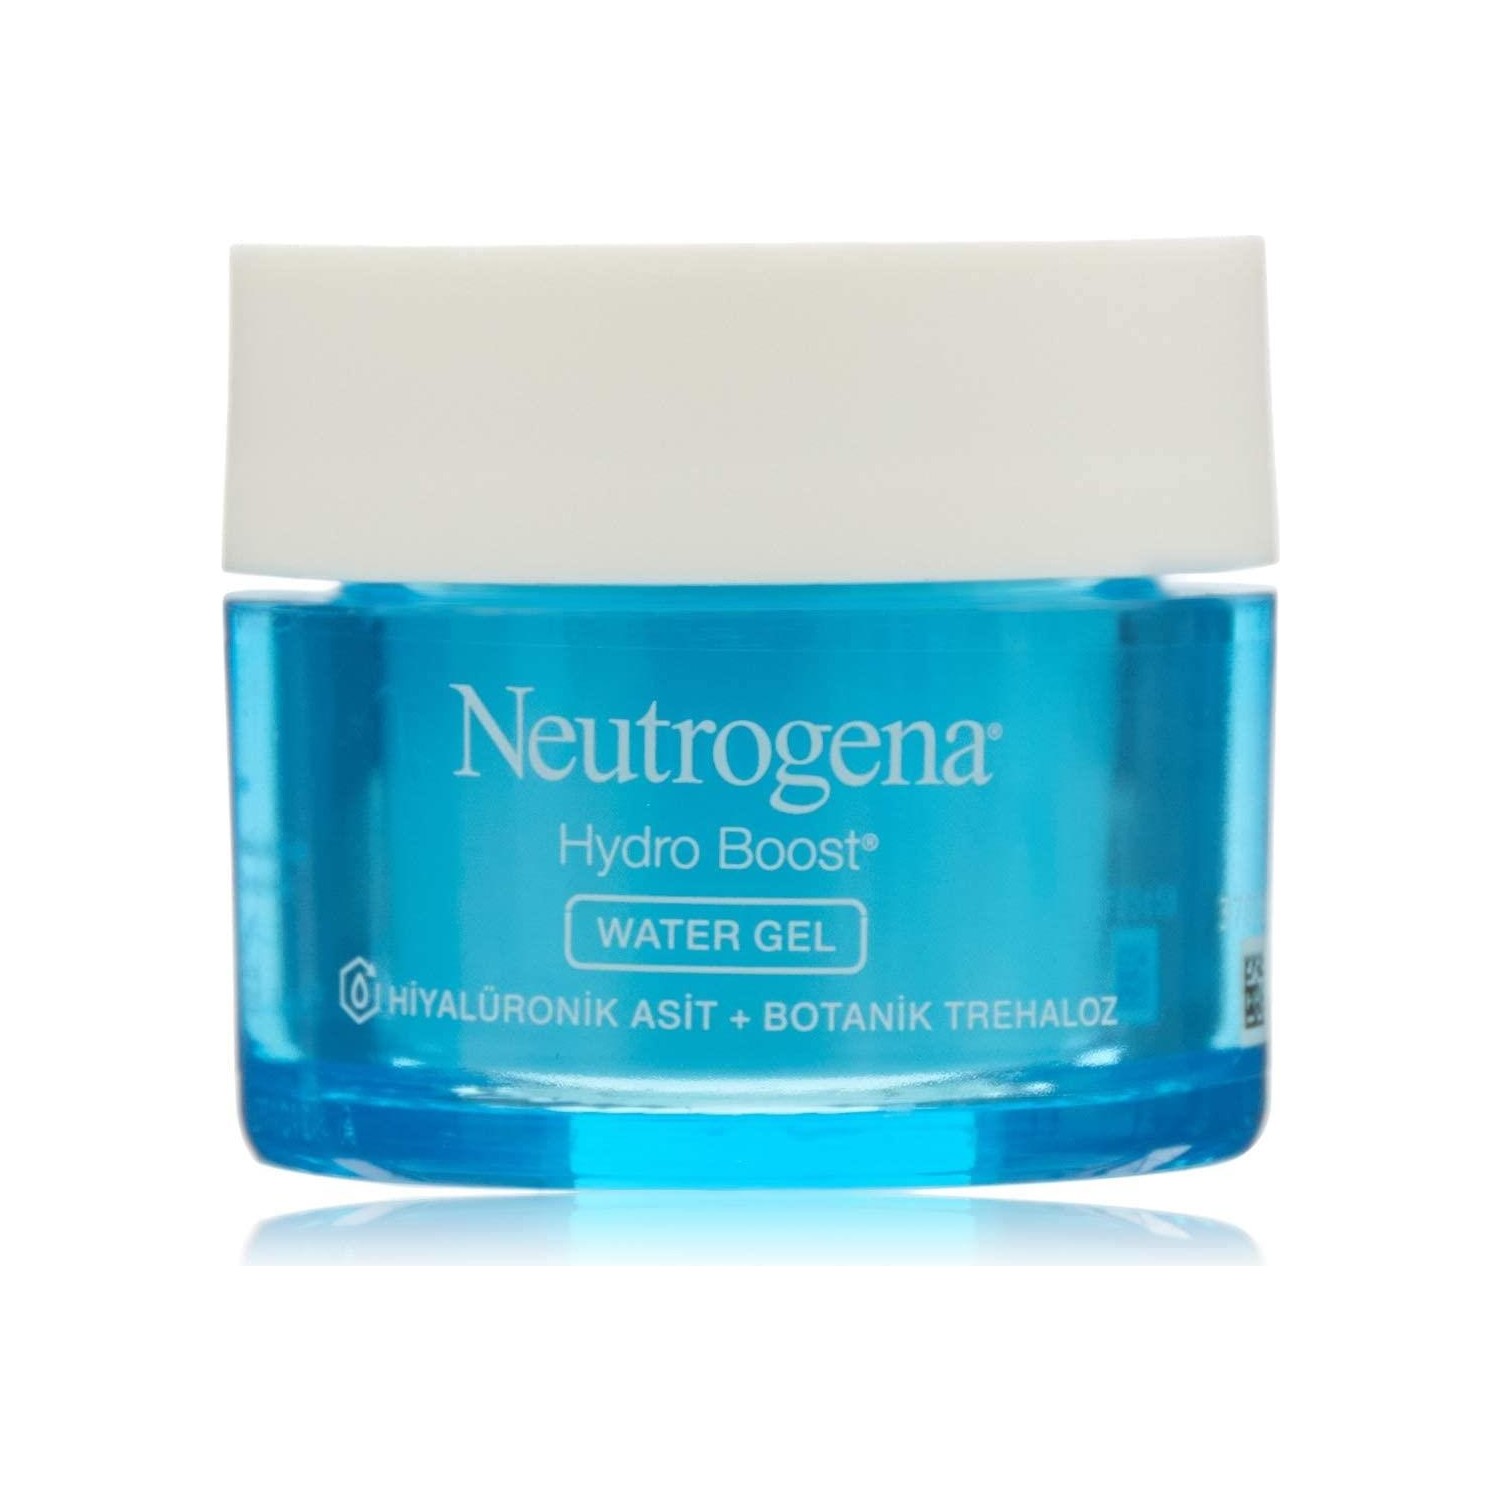 Гель увлажняющий Neutrogena Hydro Boost Water Gel для нормальной кожи, 50 мл гель увлажняющий neutrogena hydro boost water gel для нормальной кожи 50 мл